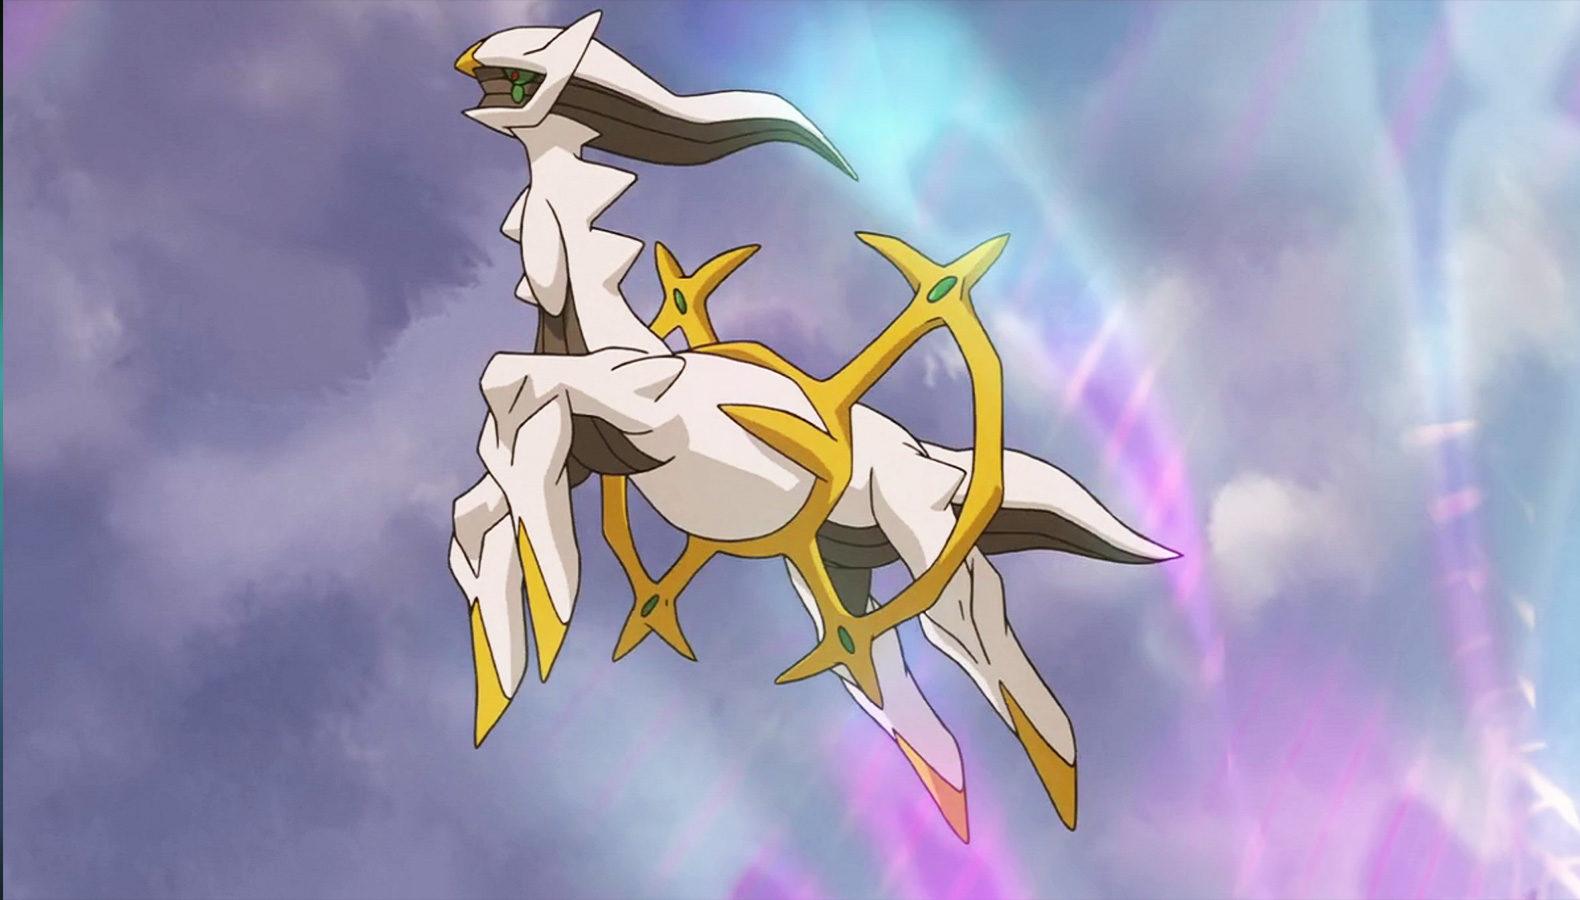 Screenshot of Legendary Pokemon Arceus in Pokemon anime.